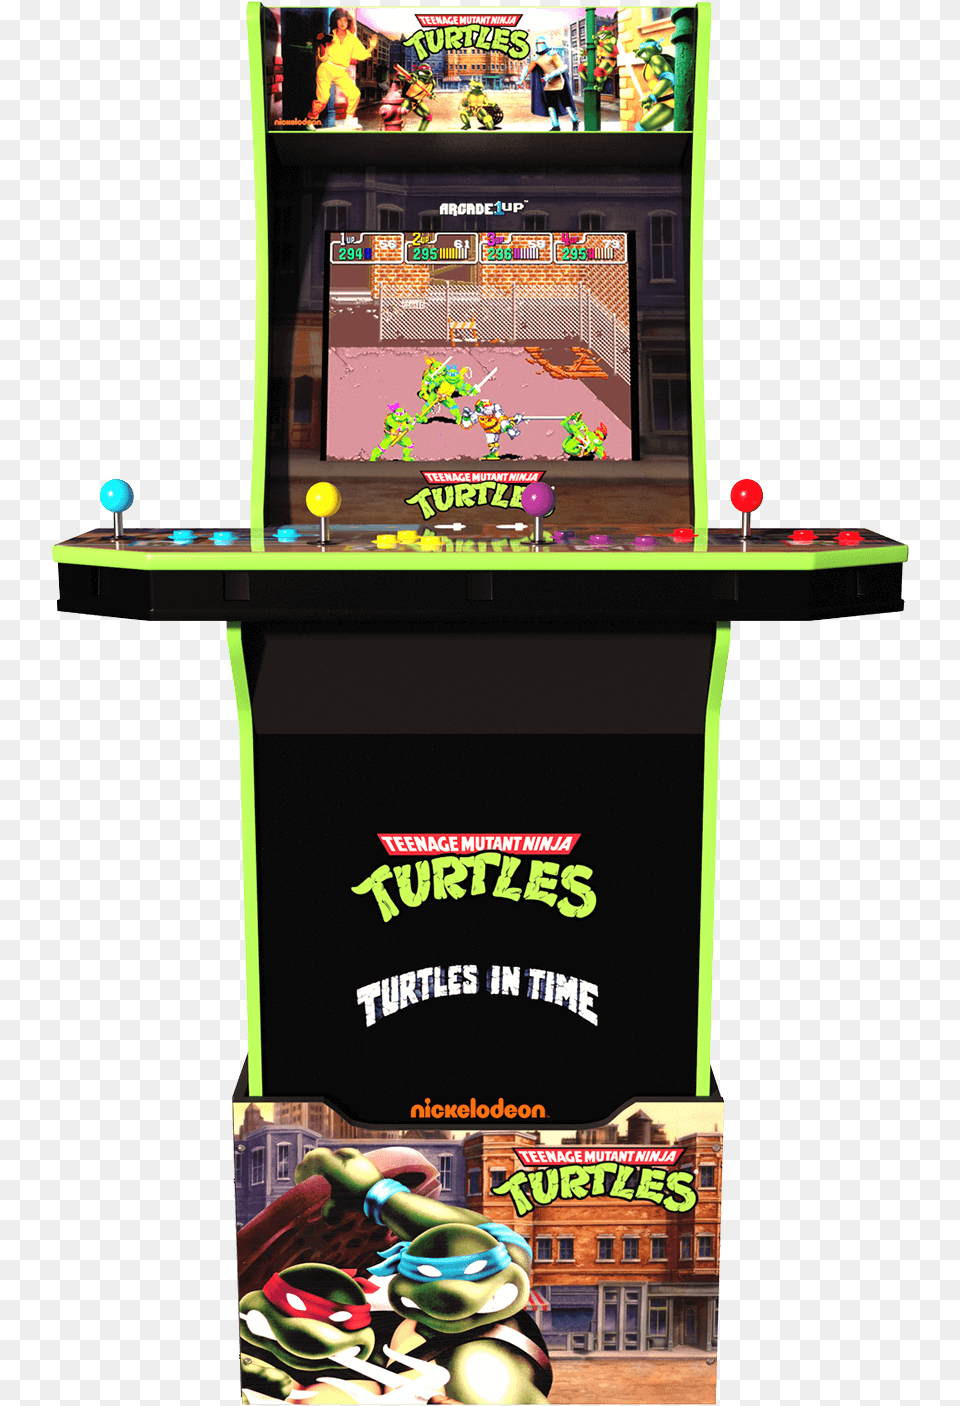 Teenage Mutant Ninja Turtles Arcade Cabinetclass Ninja Turtles Arcade, Person, Arcade Game Machine, Game, Baby Png Image